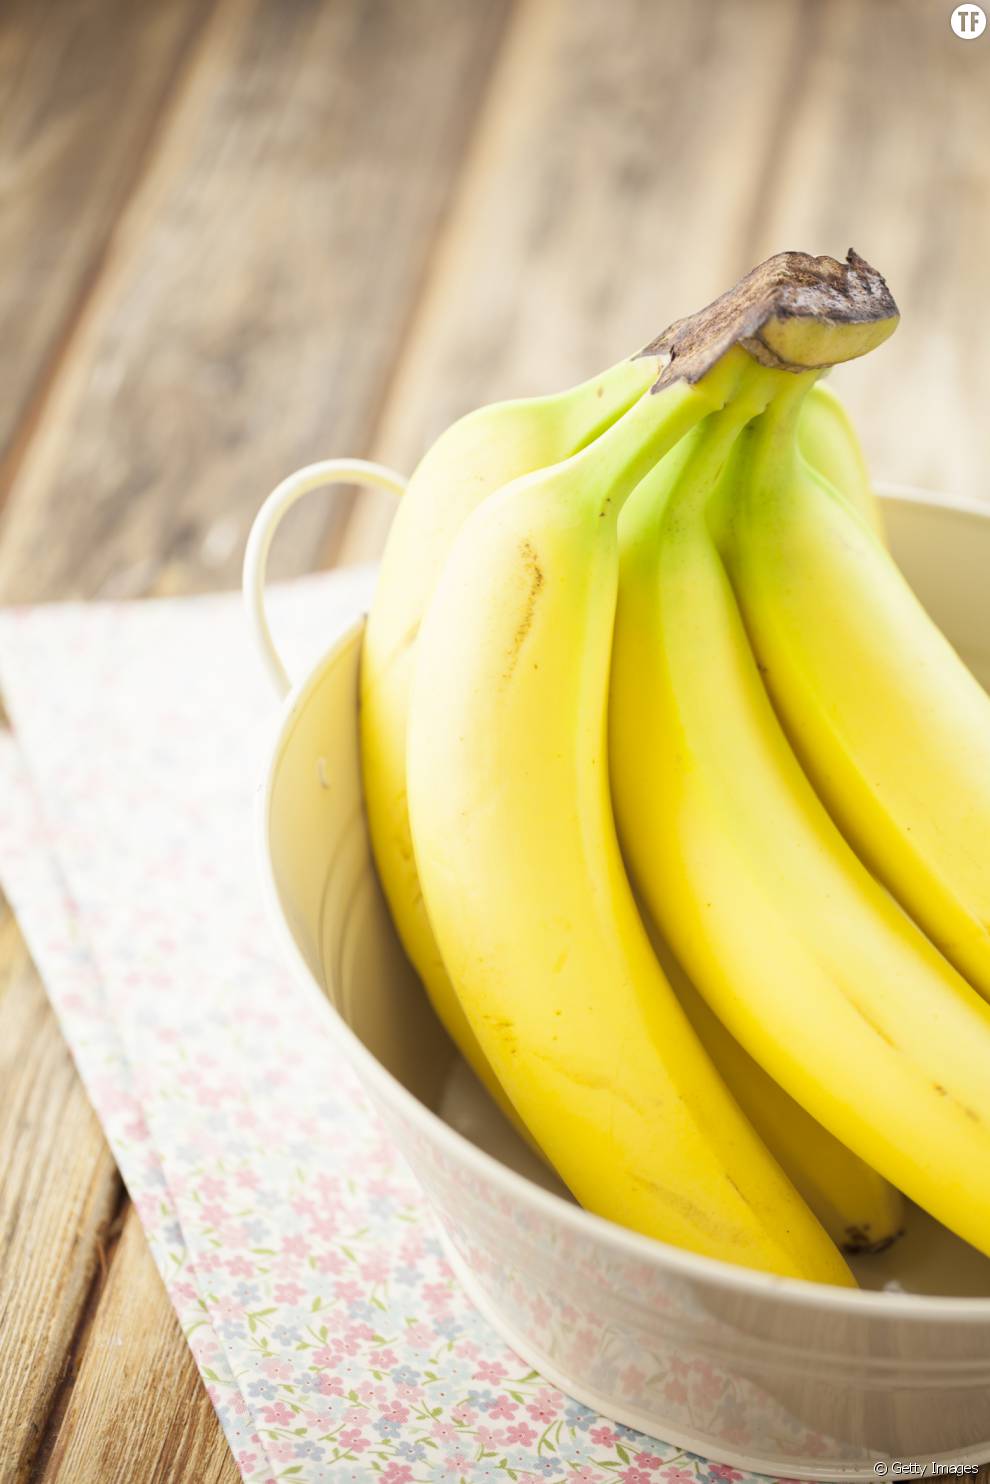 Manger trois bananes par jours peut vous apporter de nombreux bénéfices.